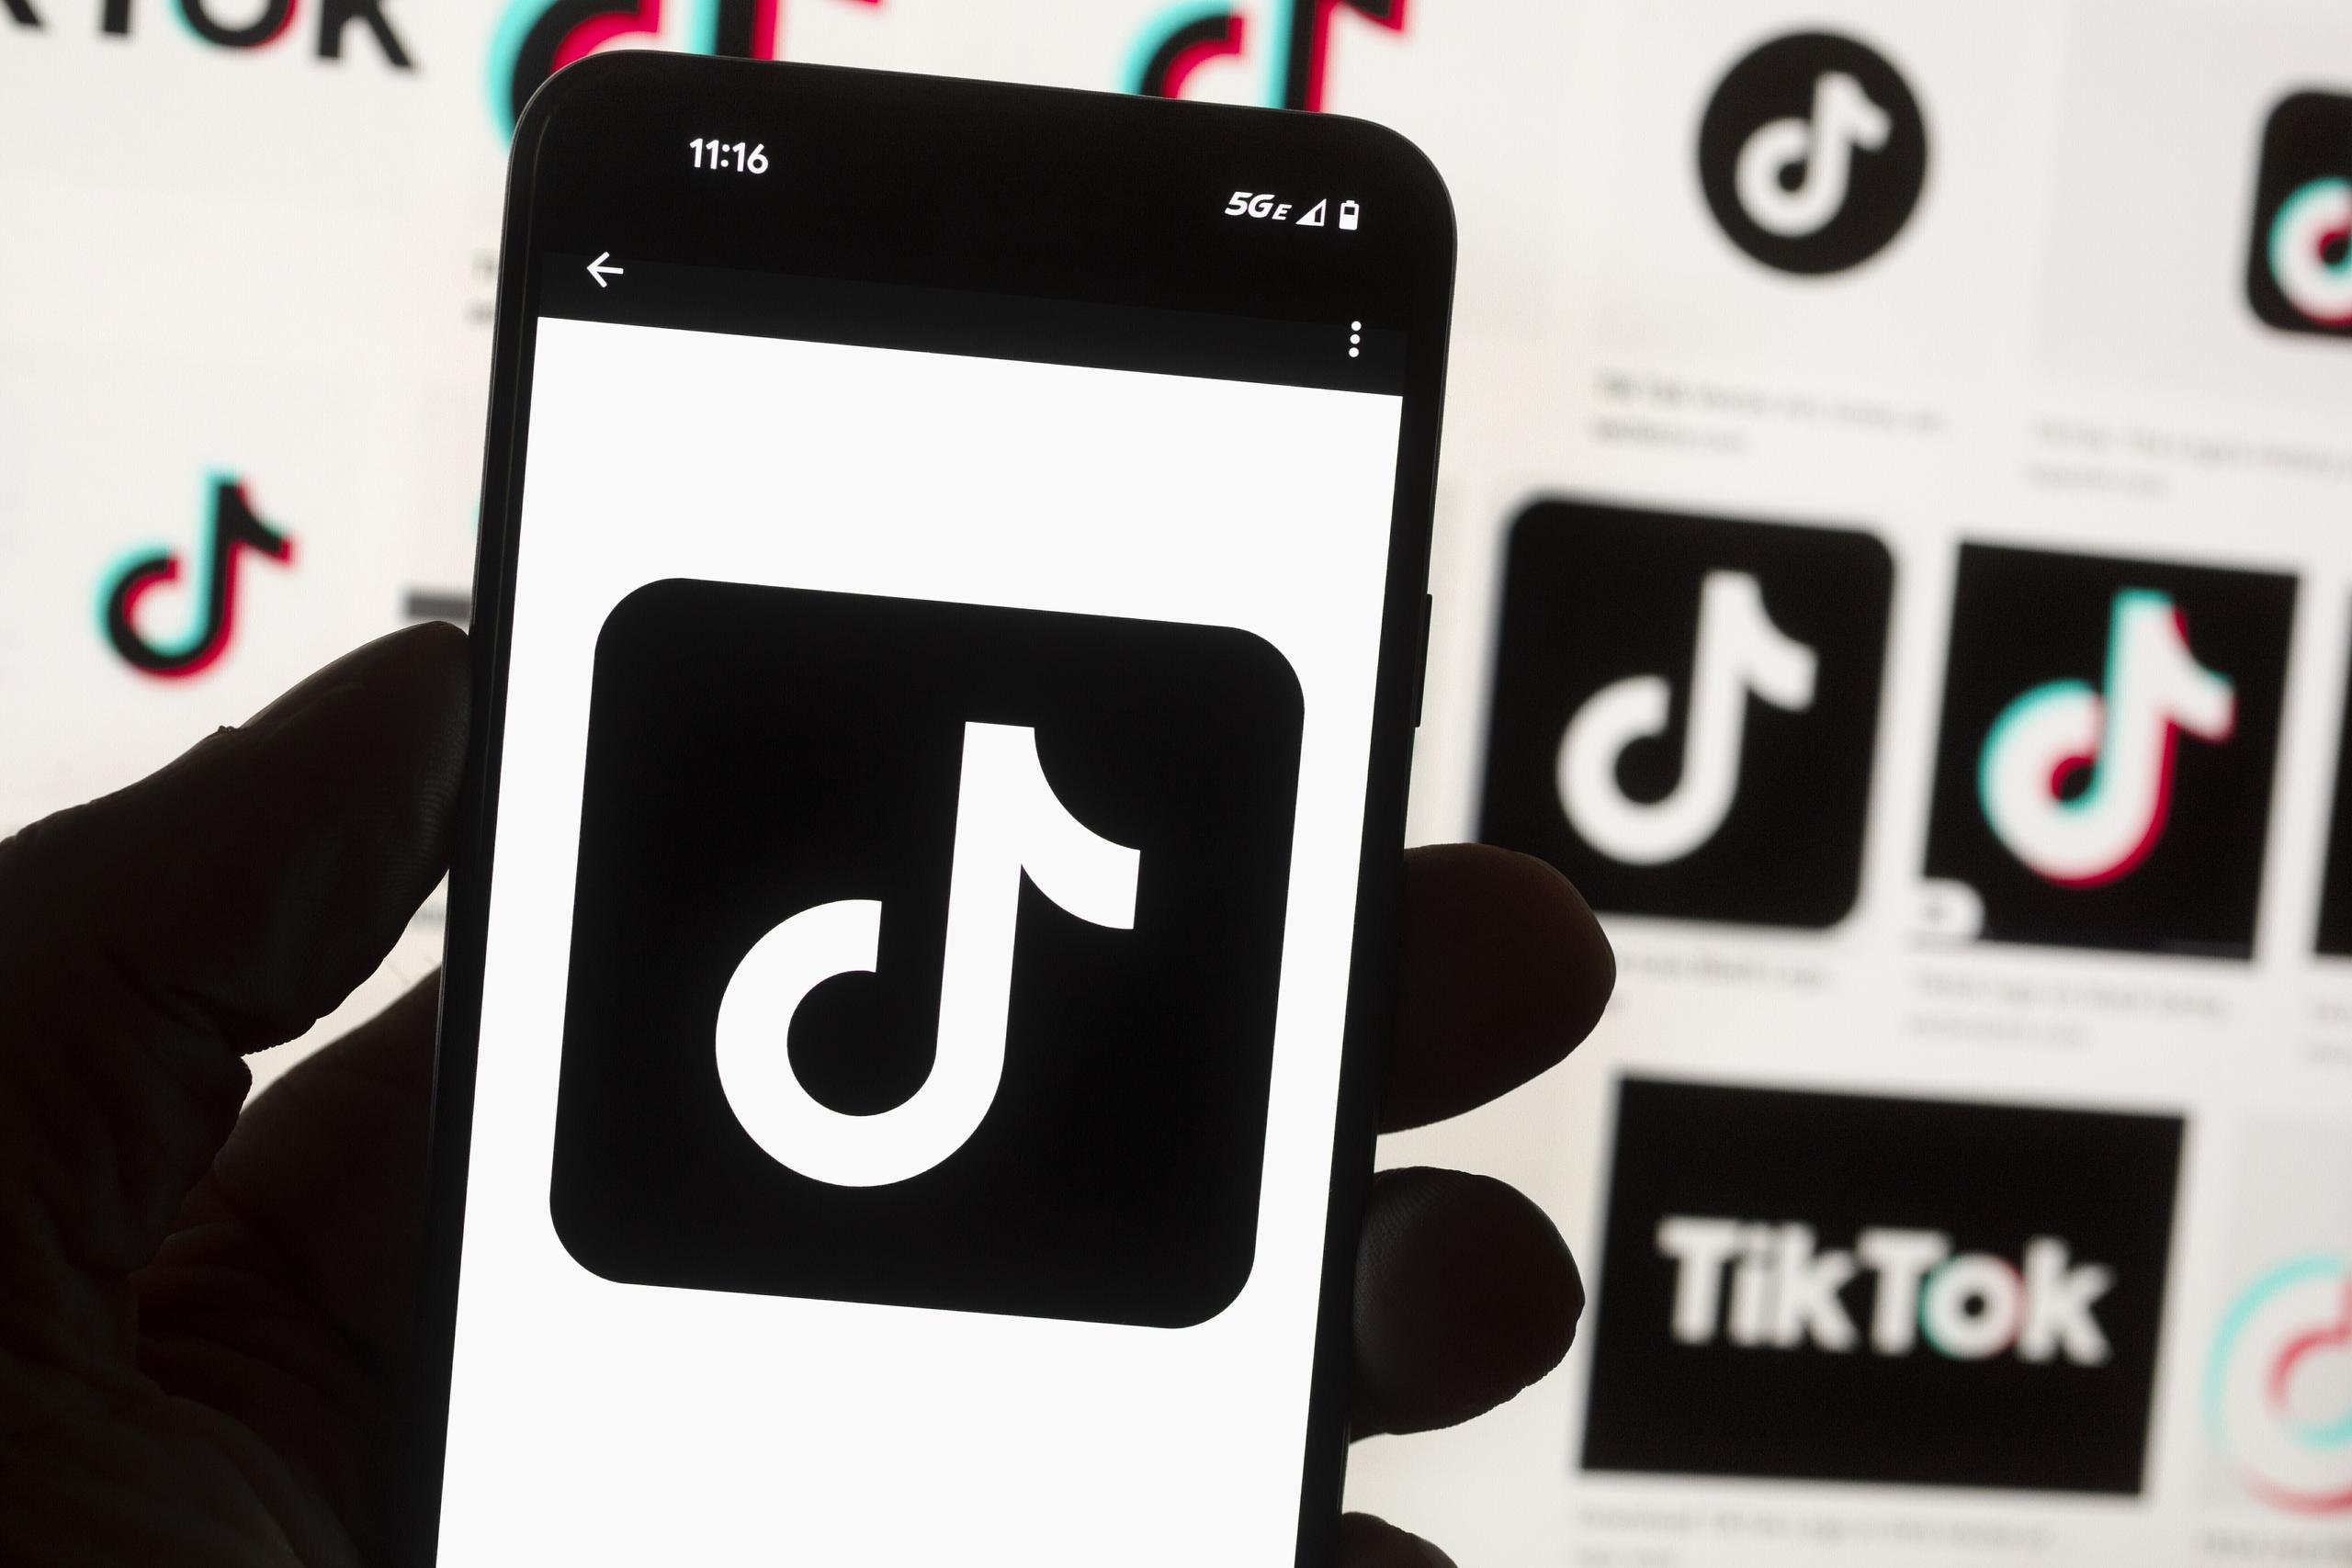 En estos momentos se estima que TikTok tiene alrededor de 170 millones de usuarios en toda la nación, incluyendo Puerto Rico.